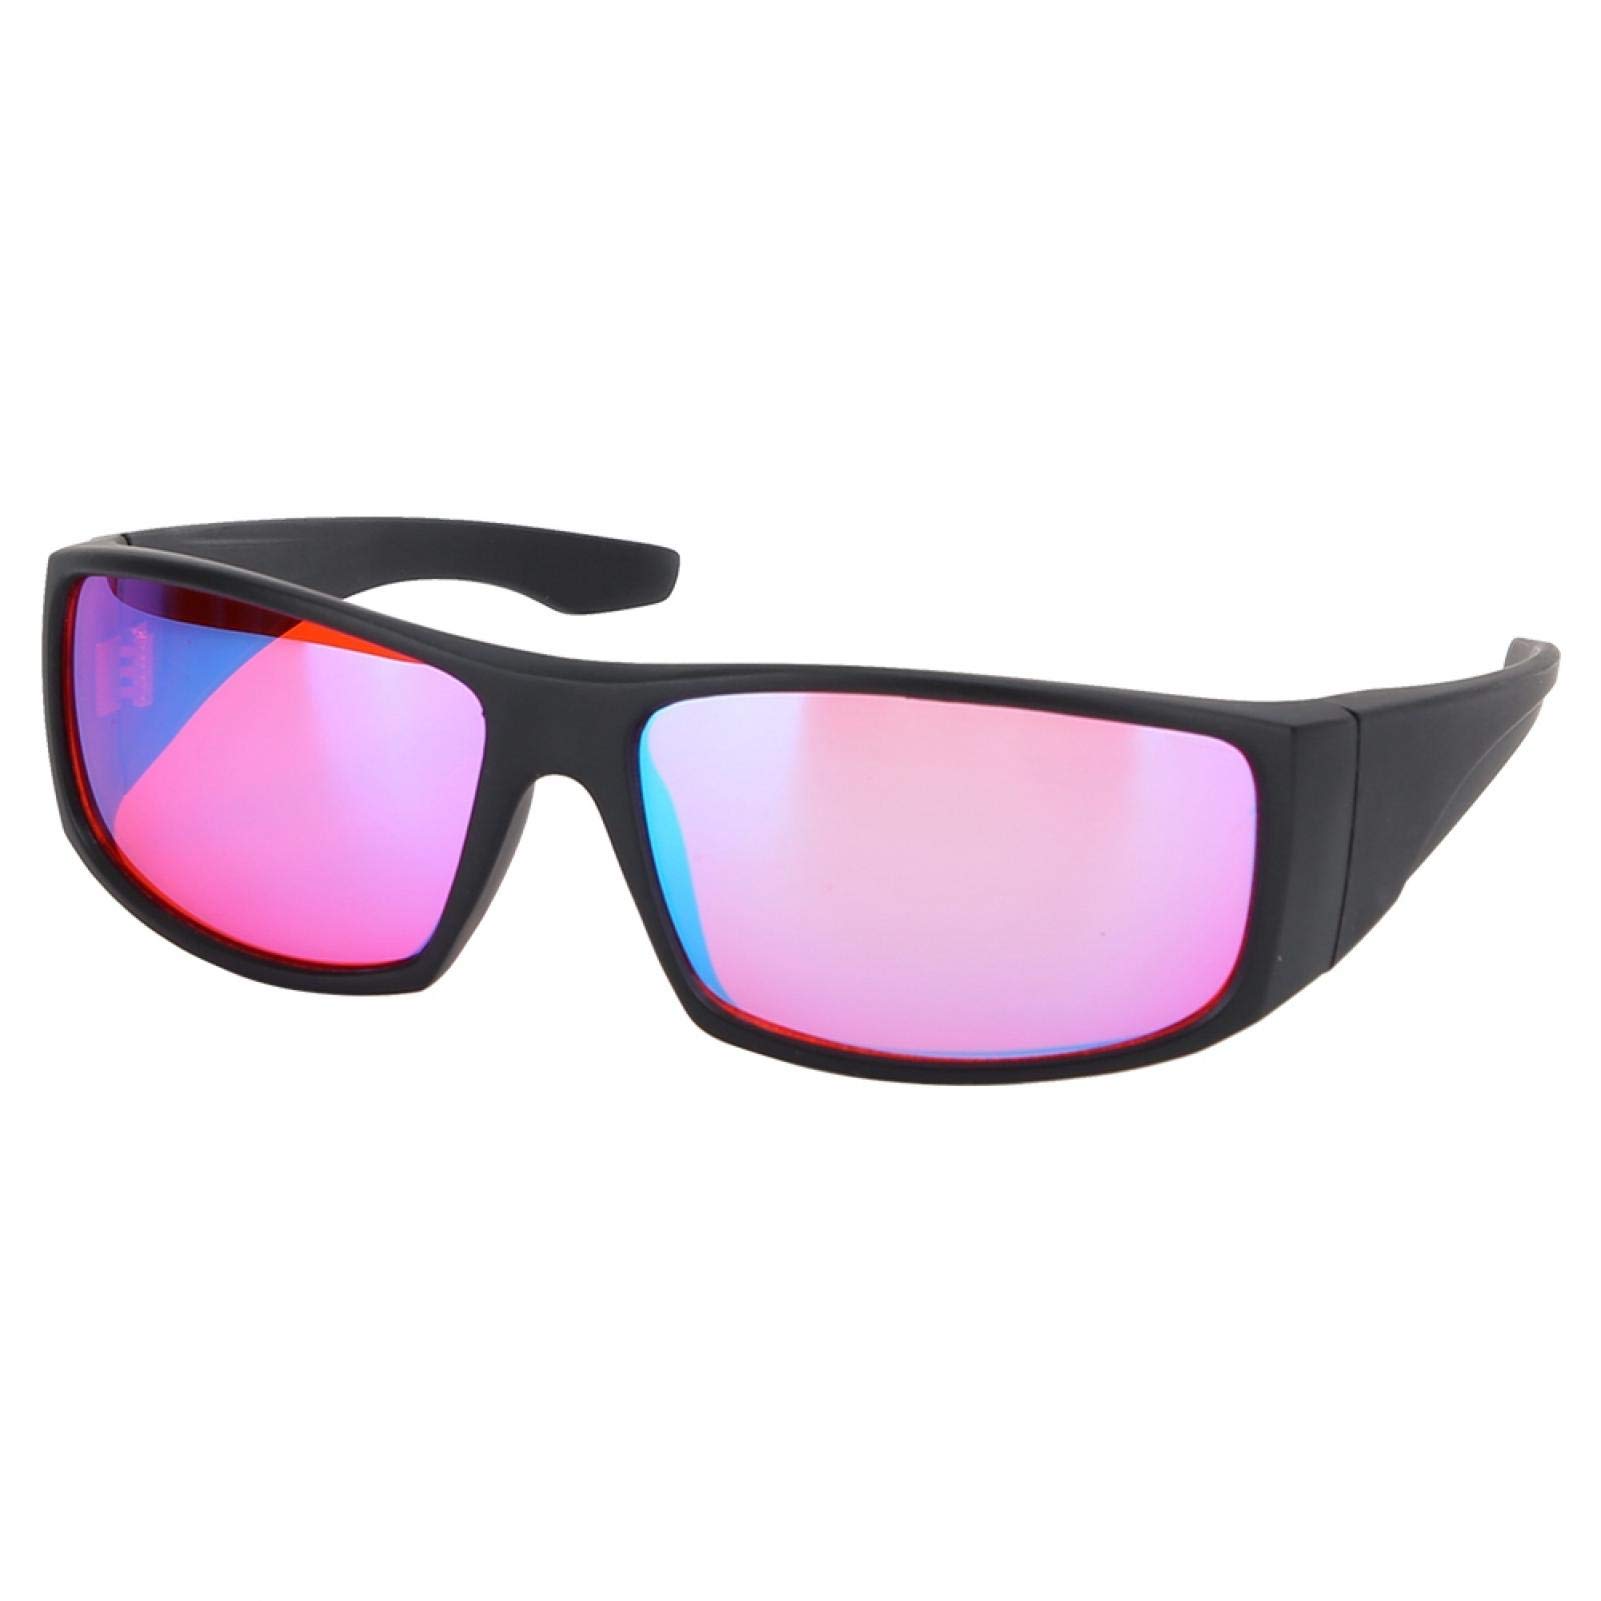 Jacksking Farbenblinde Brille, Korrekturbrille Rot Grün Blindheit Schwäche Sehkraftverbesserungsbrille, Farbsehstörung/Farbschwäche